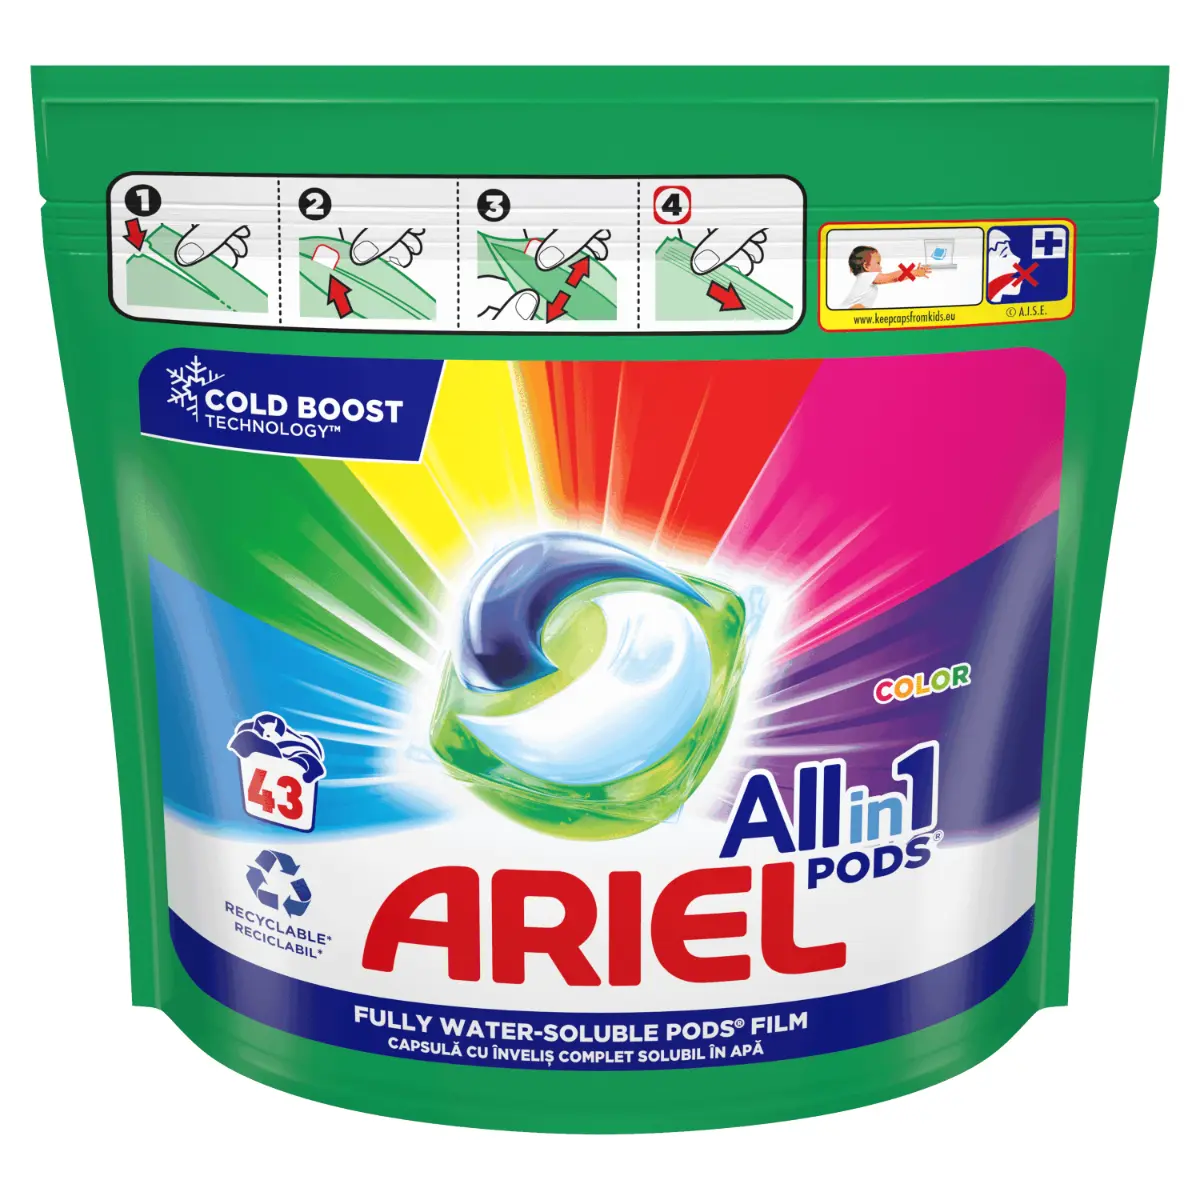 Detergent de rufe capsule Ariel All in One PODS Color, 43 spalari